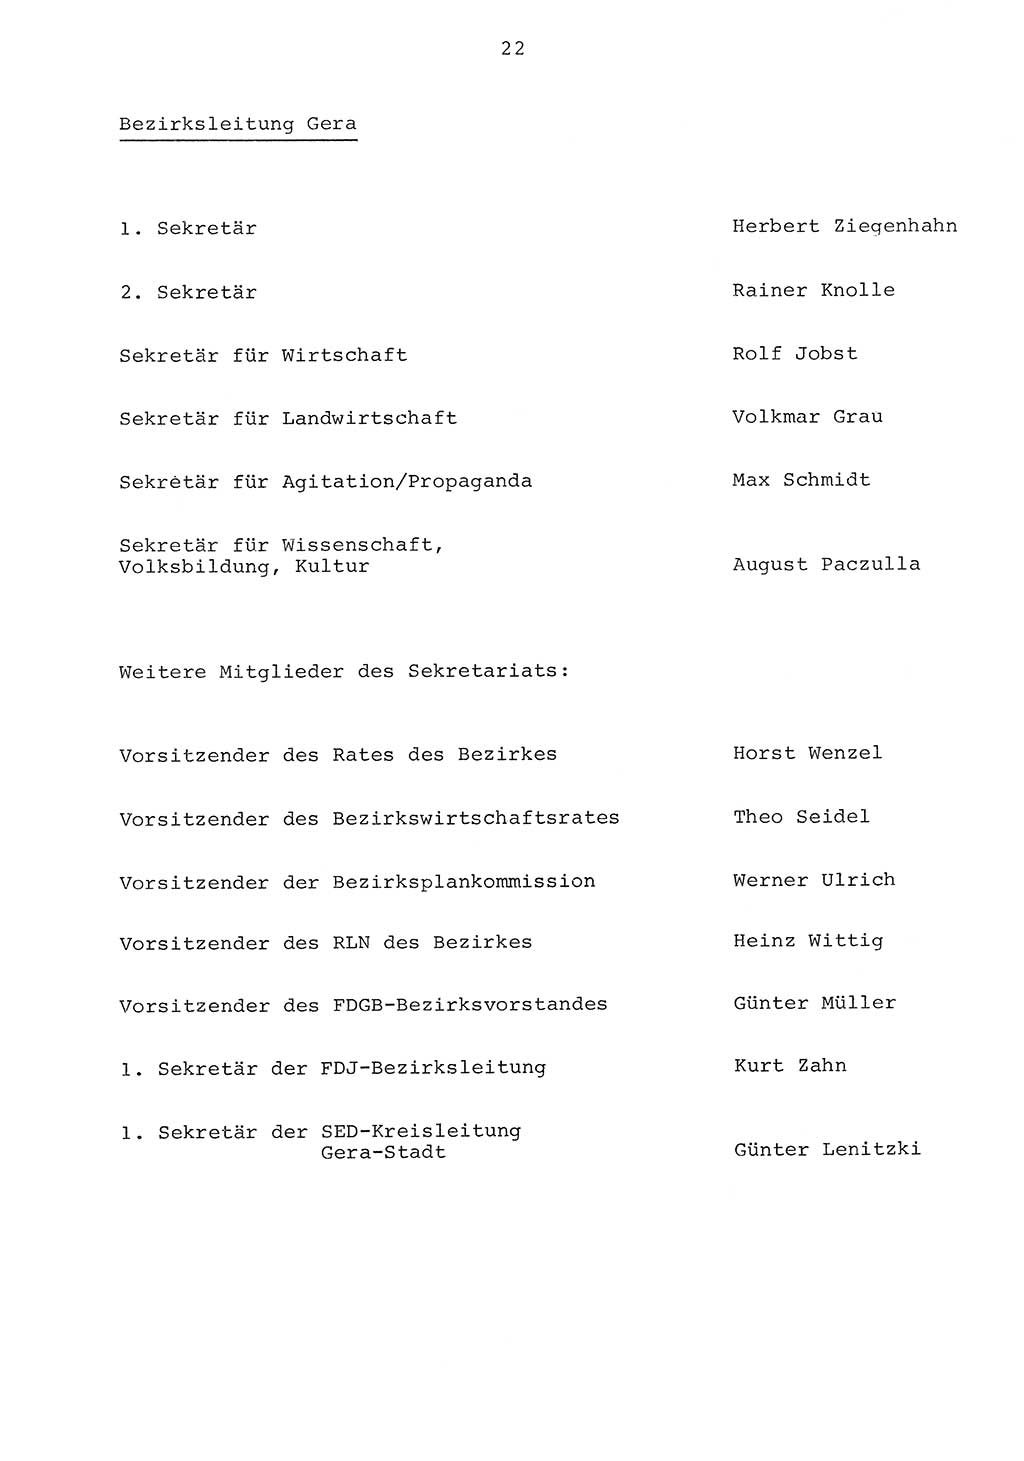 Parteiapparat der Deutschen Demokratischen Republik (DDR) 1970, Seite 22 (Parteiapp. DDR 1970, S. 22)